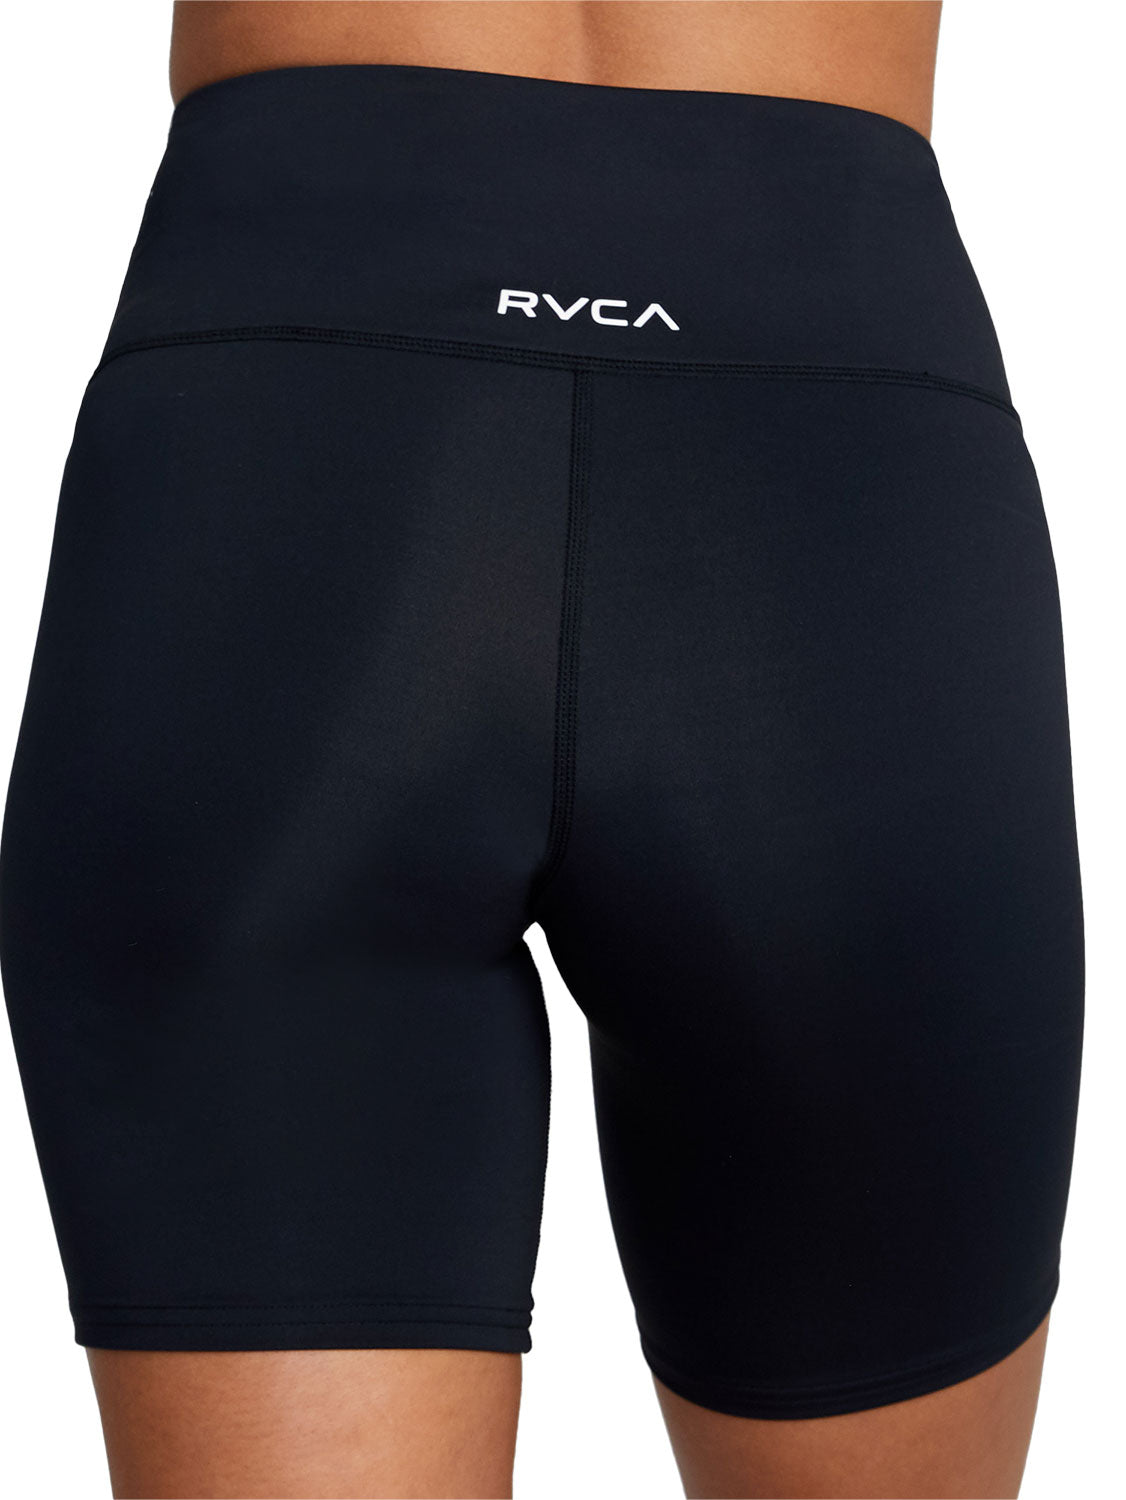 RVCA Ladies VA Essential Bike Short